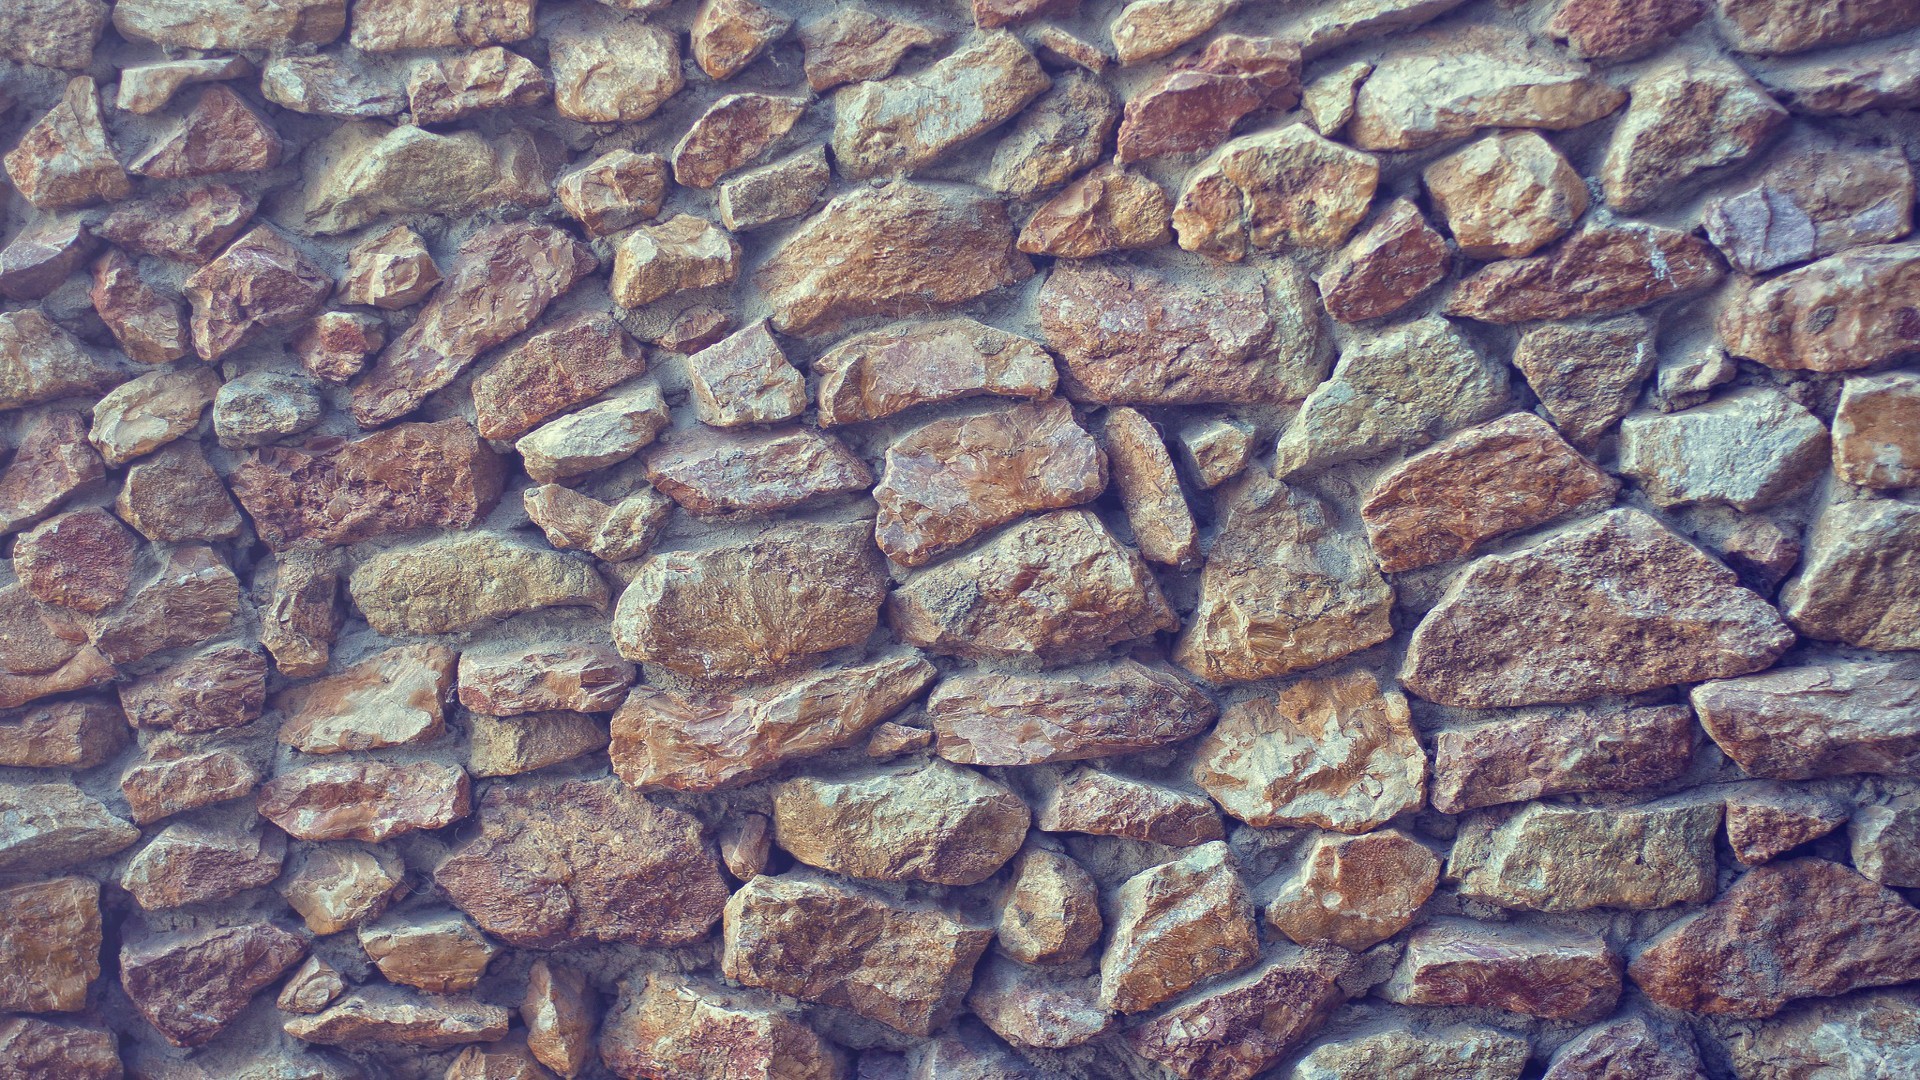 General 1920x1080 wall bricks texture